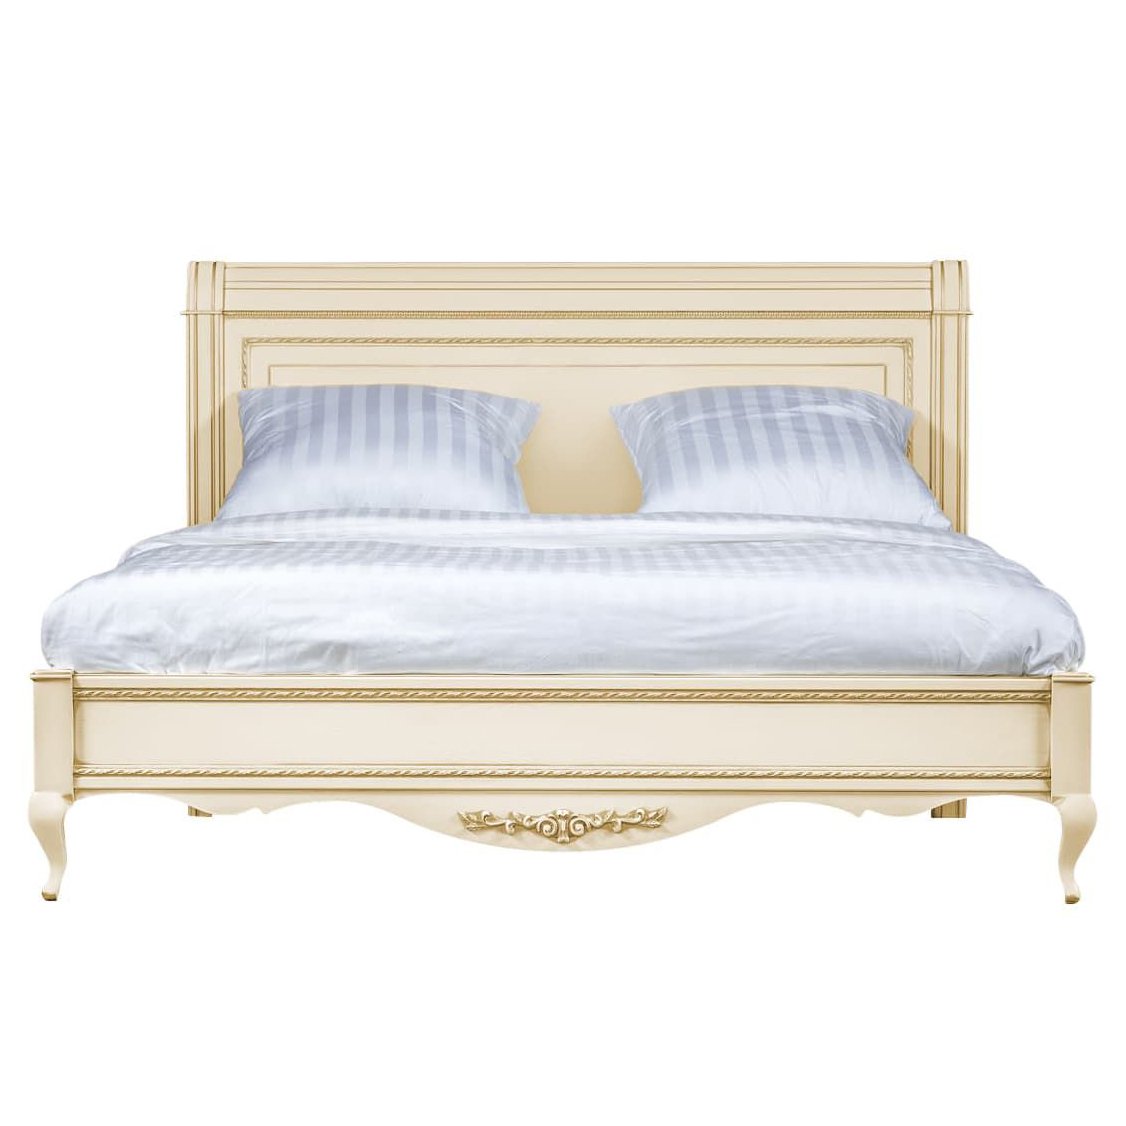 Кровать Timber Неаполь, двуспальная 180x200 см цвет: ваниль с золотом (T-538)T-538